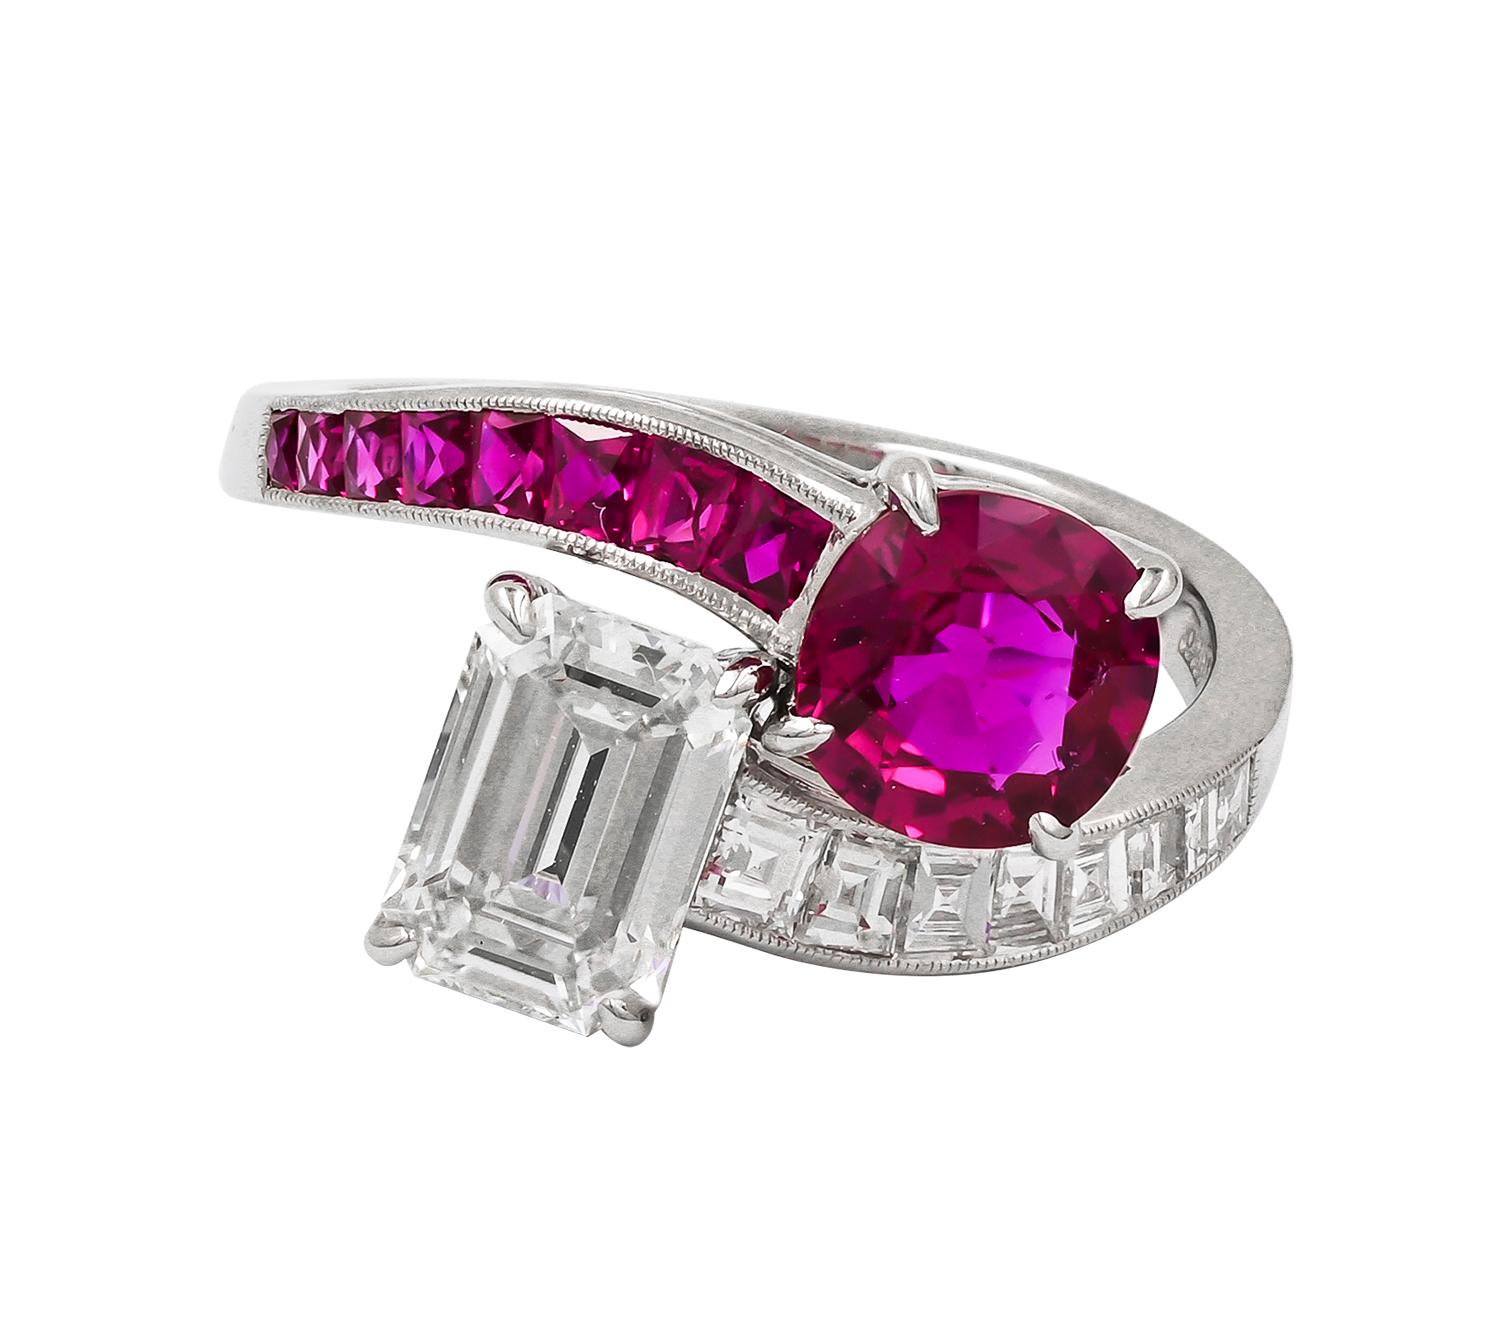 Der Platinring Sophia D besteht aus einem Rubin und einem Diamanten. Der abgebildete Rubin hat einen Durchmesser von 1,08 Karat und der Diamant von 1,08 Karat. Die umgebenden Rubine wiegen insgesamt 0,25 Karat und die Diamanten 0,28 Karat. Ringgröße